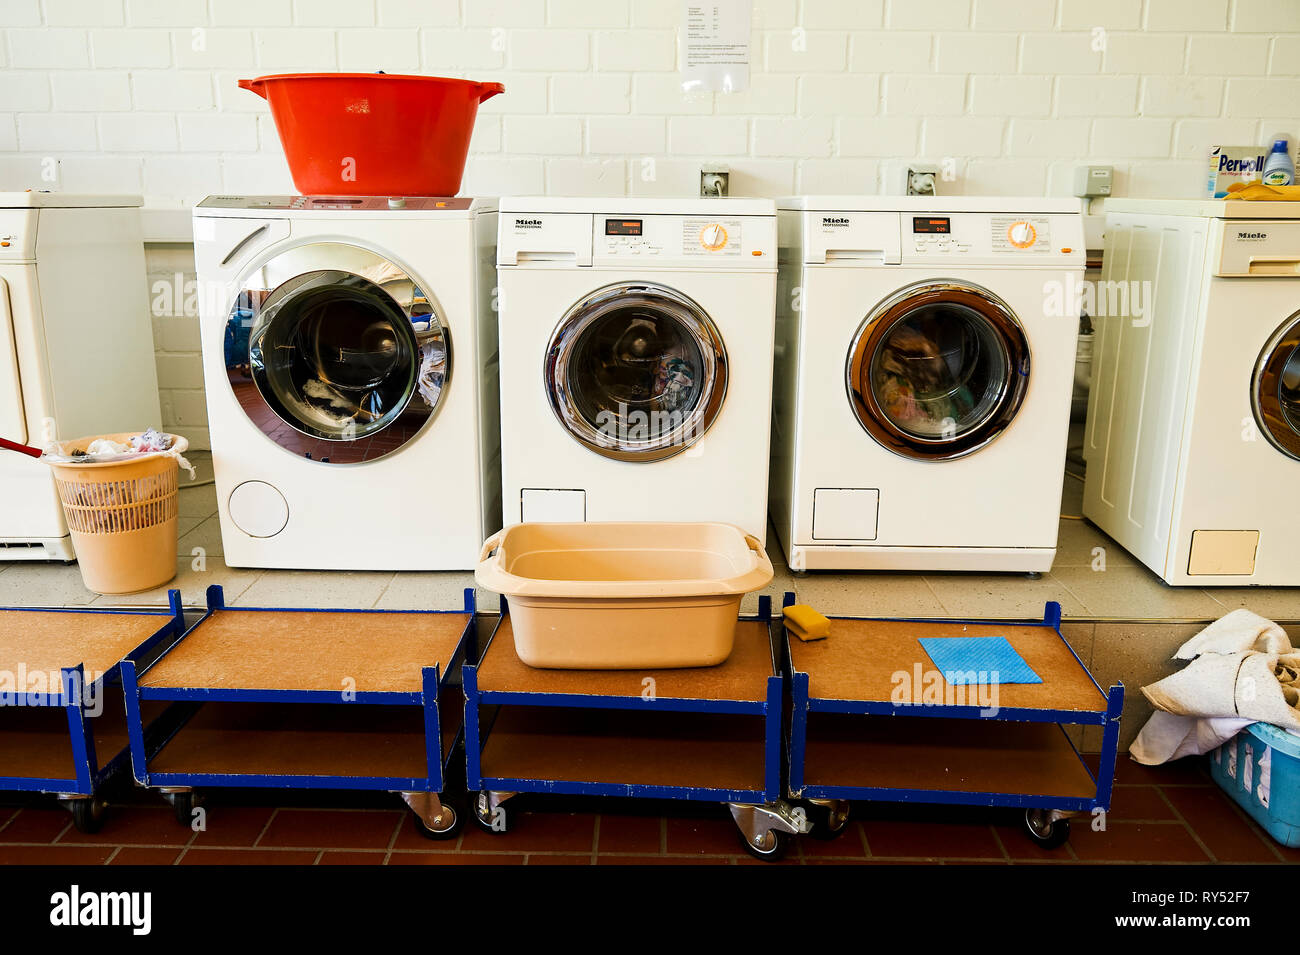 Waschmaschinen und ein Trockner nebeneinader stehen in einem Waschkeller. Auf dem Trockner steht ein roter Waeschekrob und im Vordergrund eine Schues Foto Stock